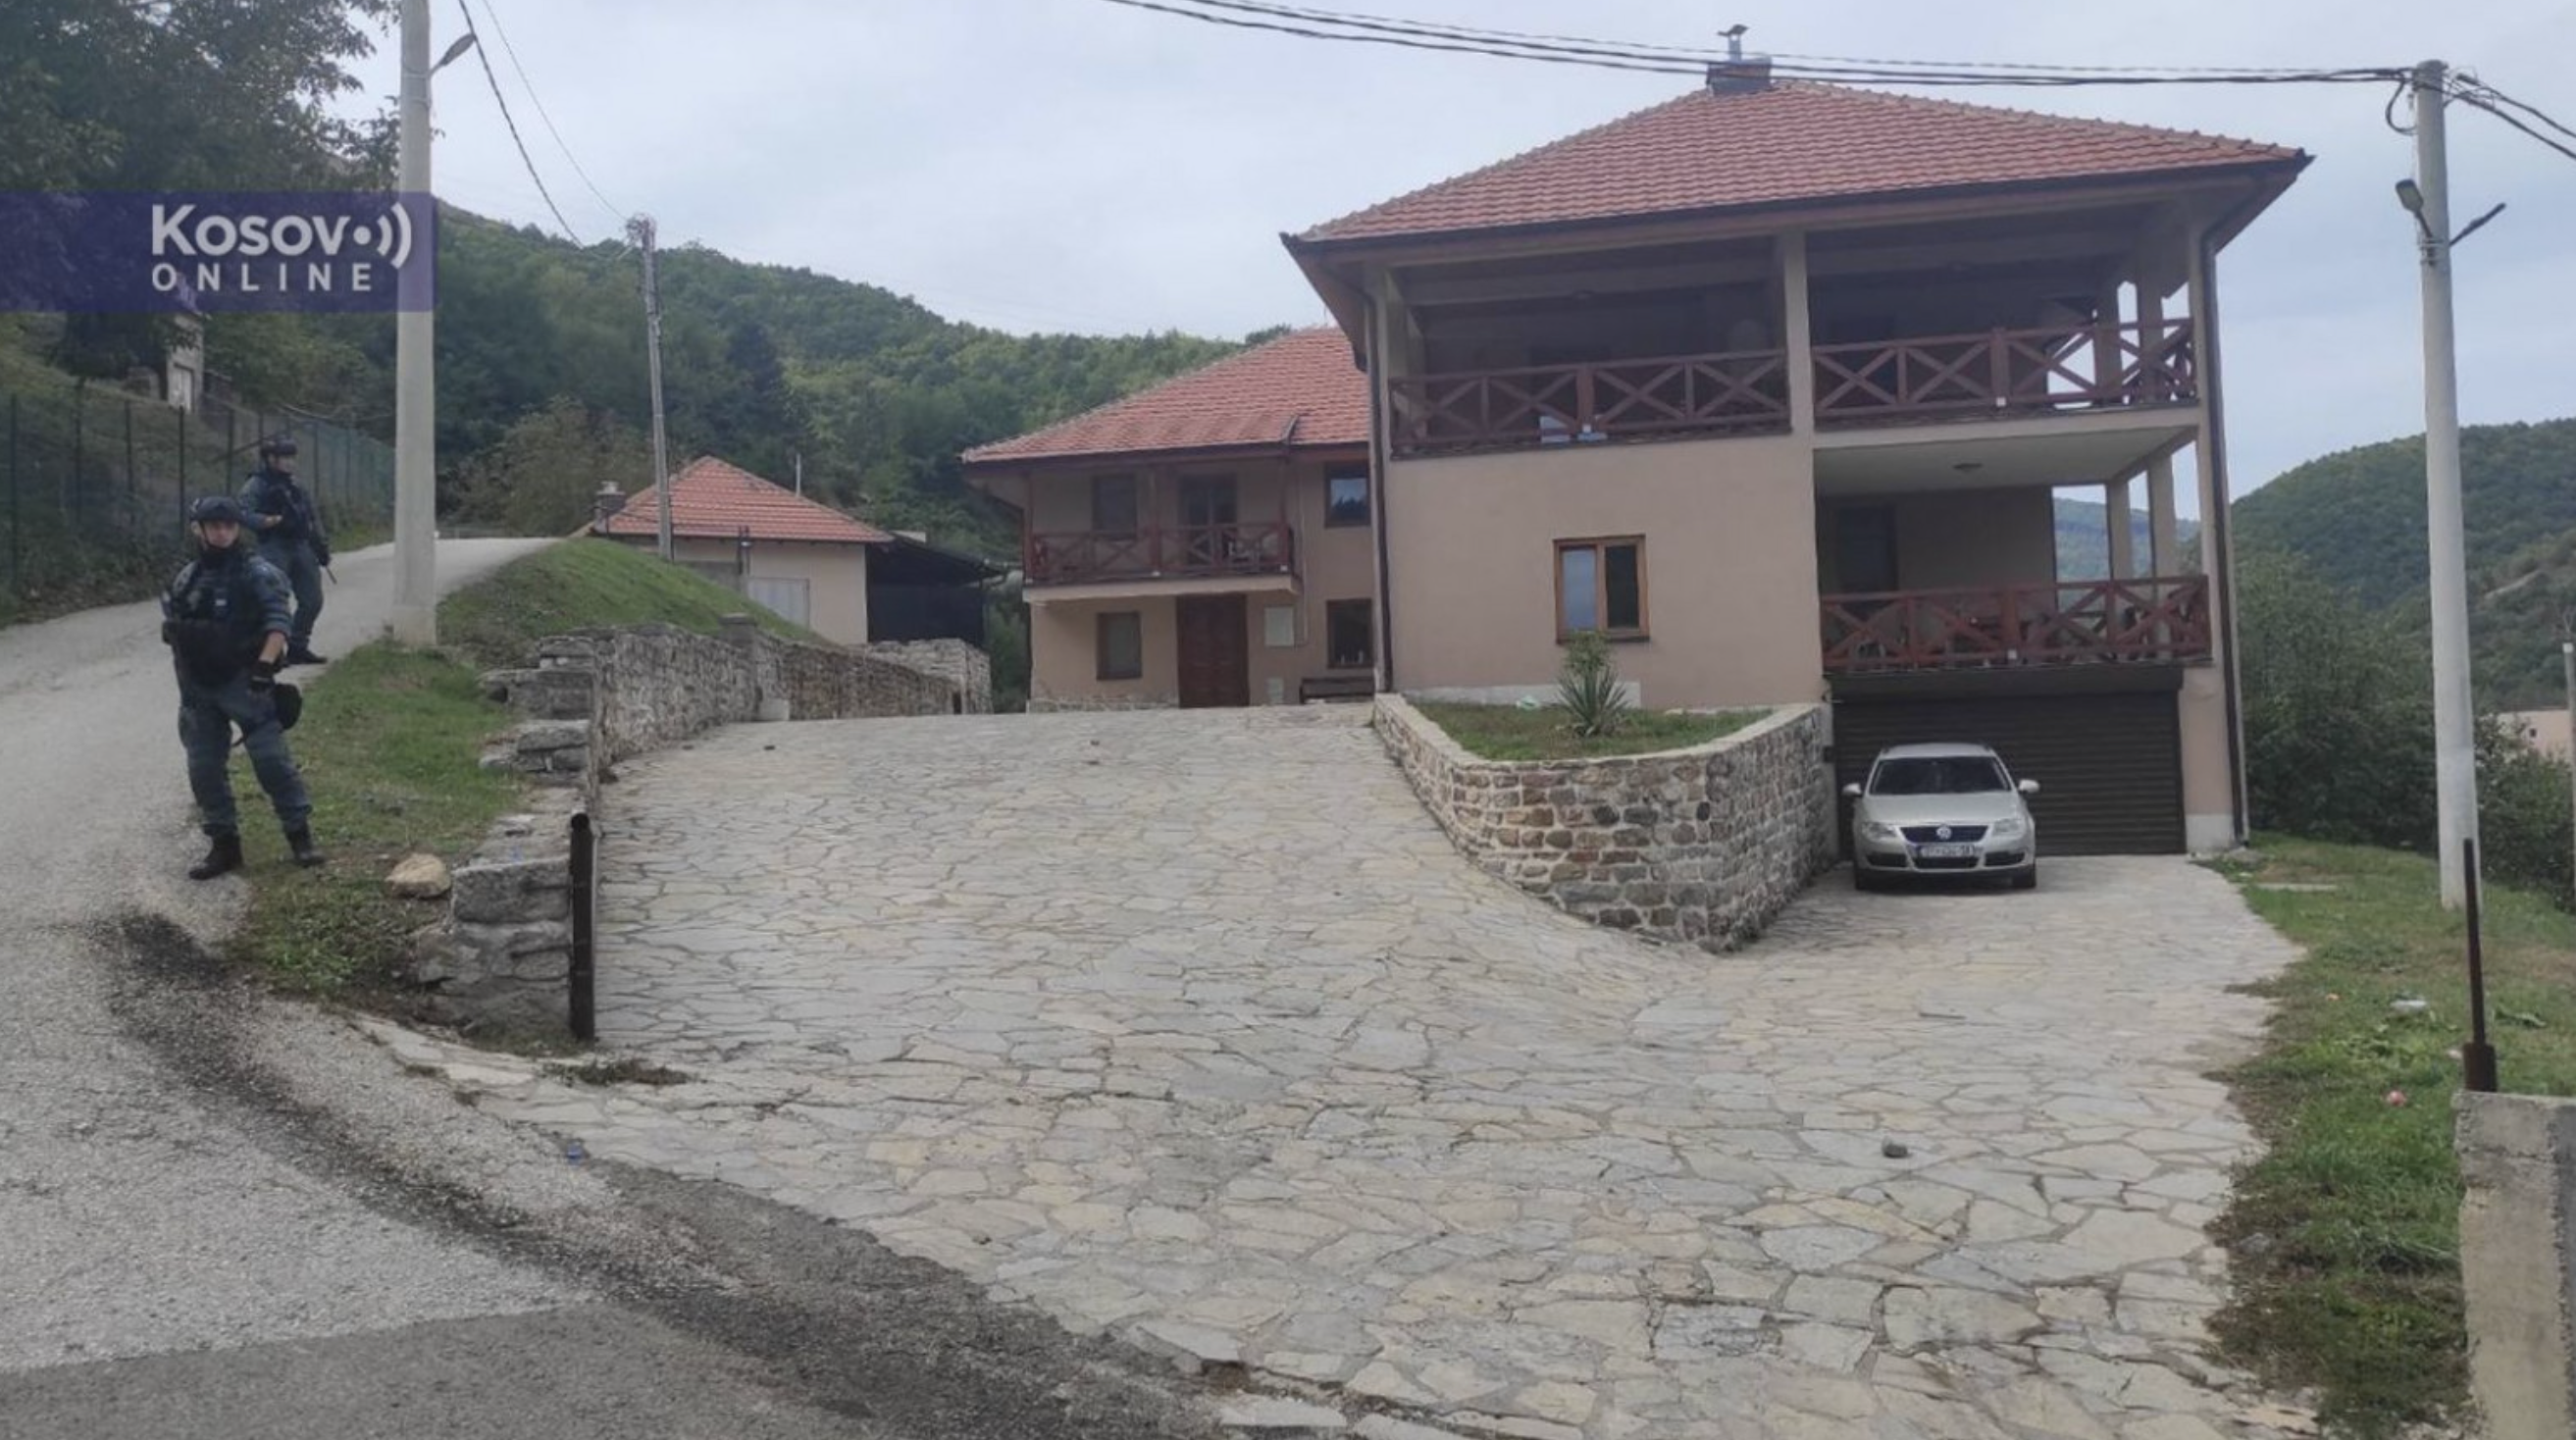 Тројици Срба ухапшених након сукоба у Бањској продужен притвор још два месеца